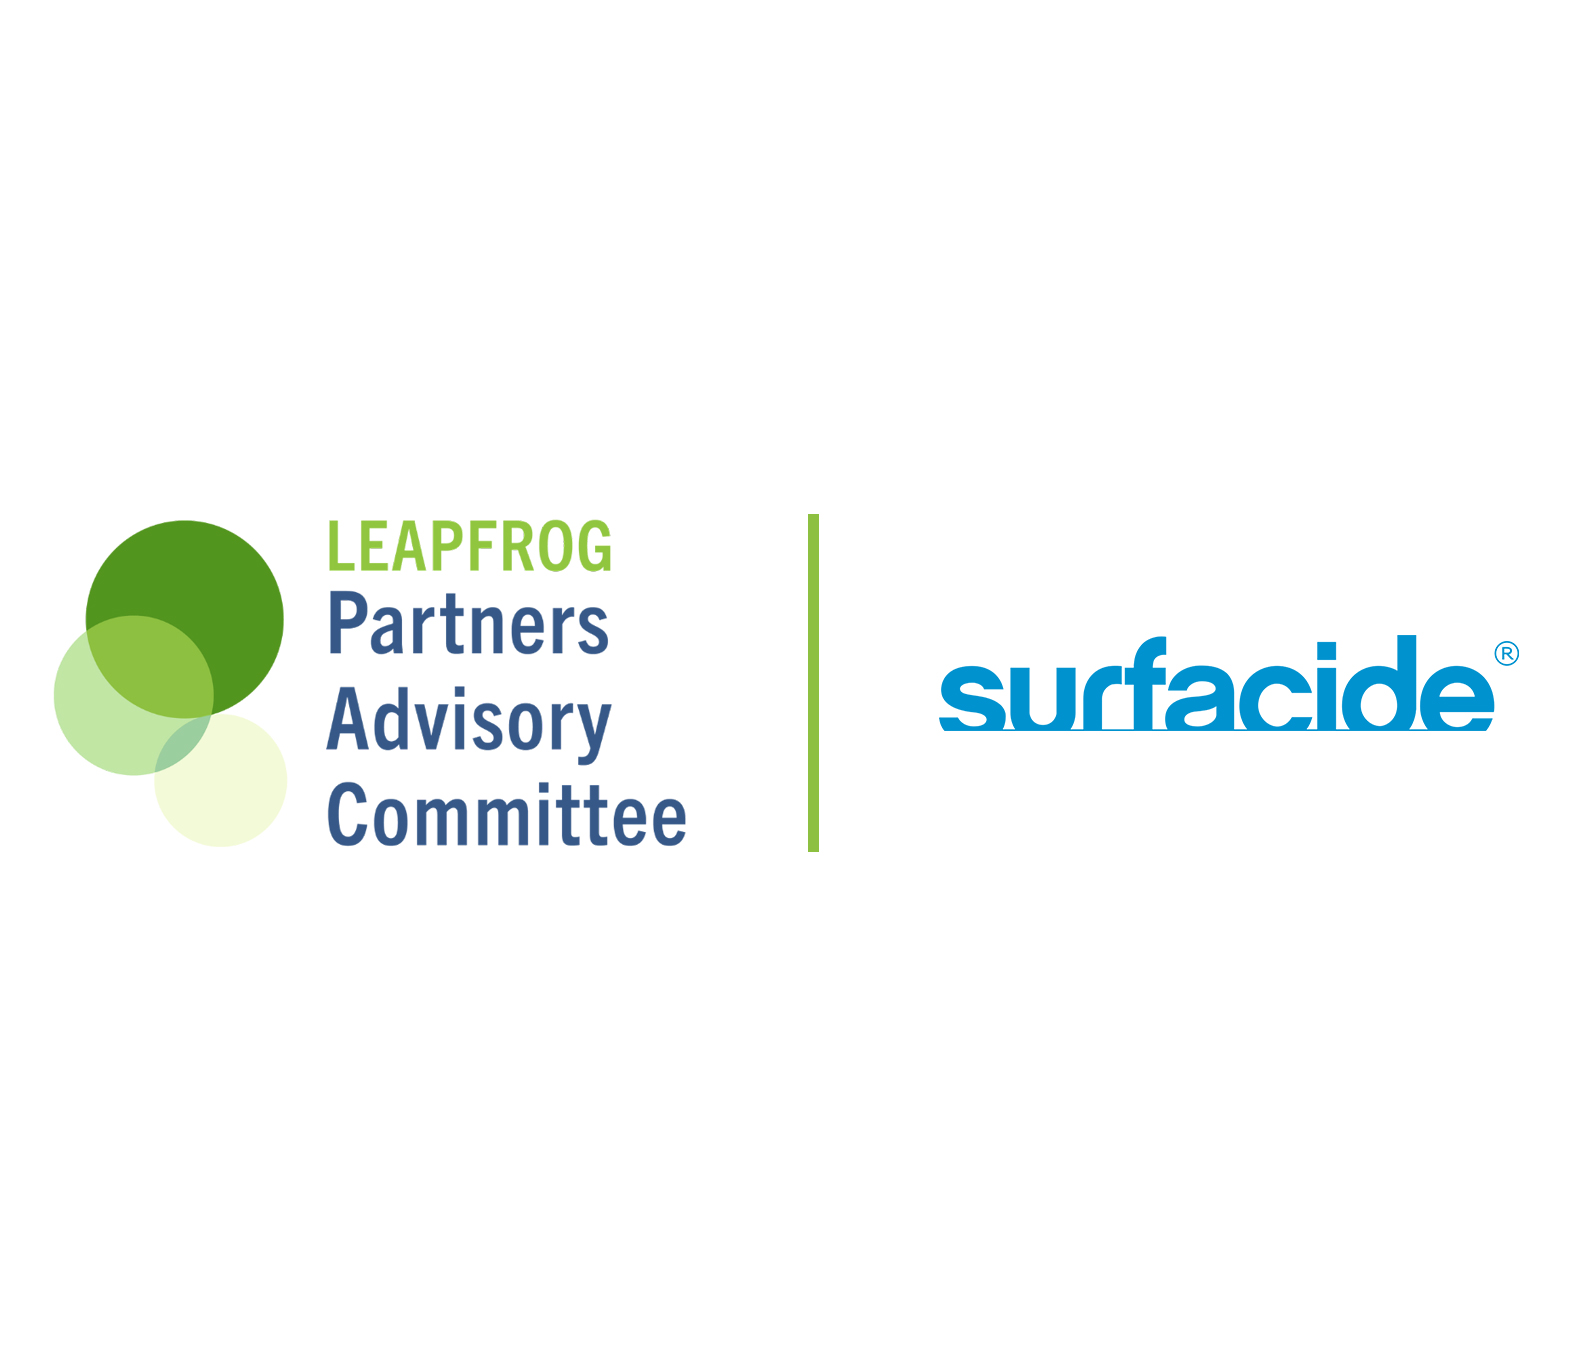 Surfacide Leapfrog partner image